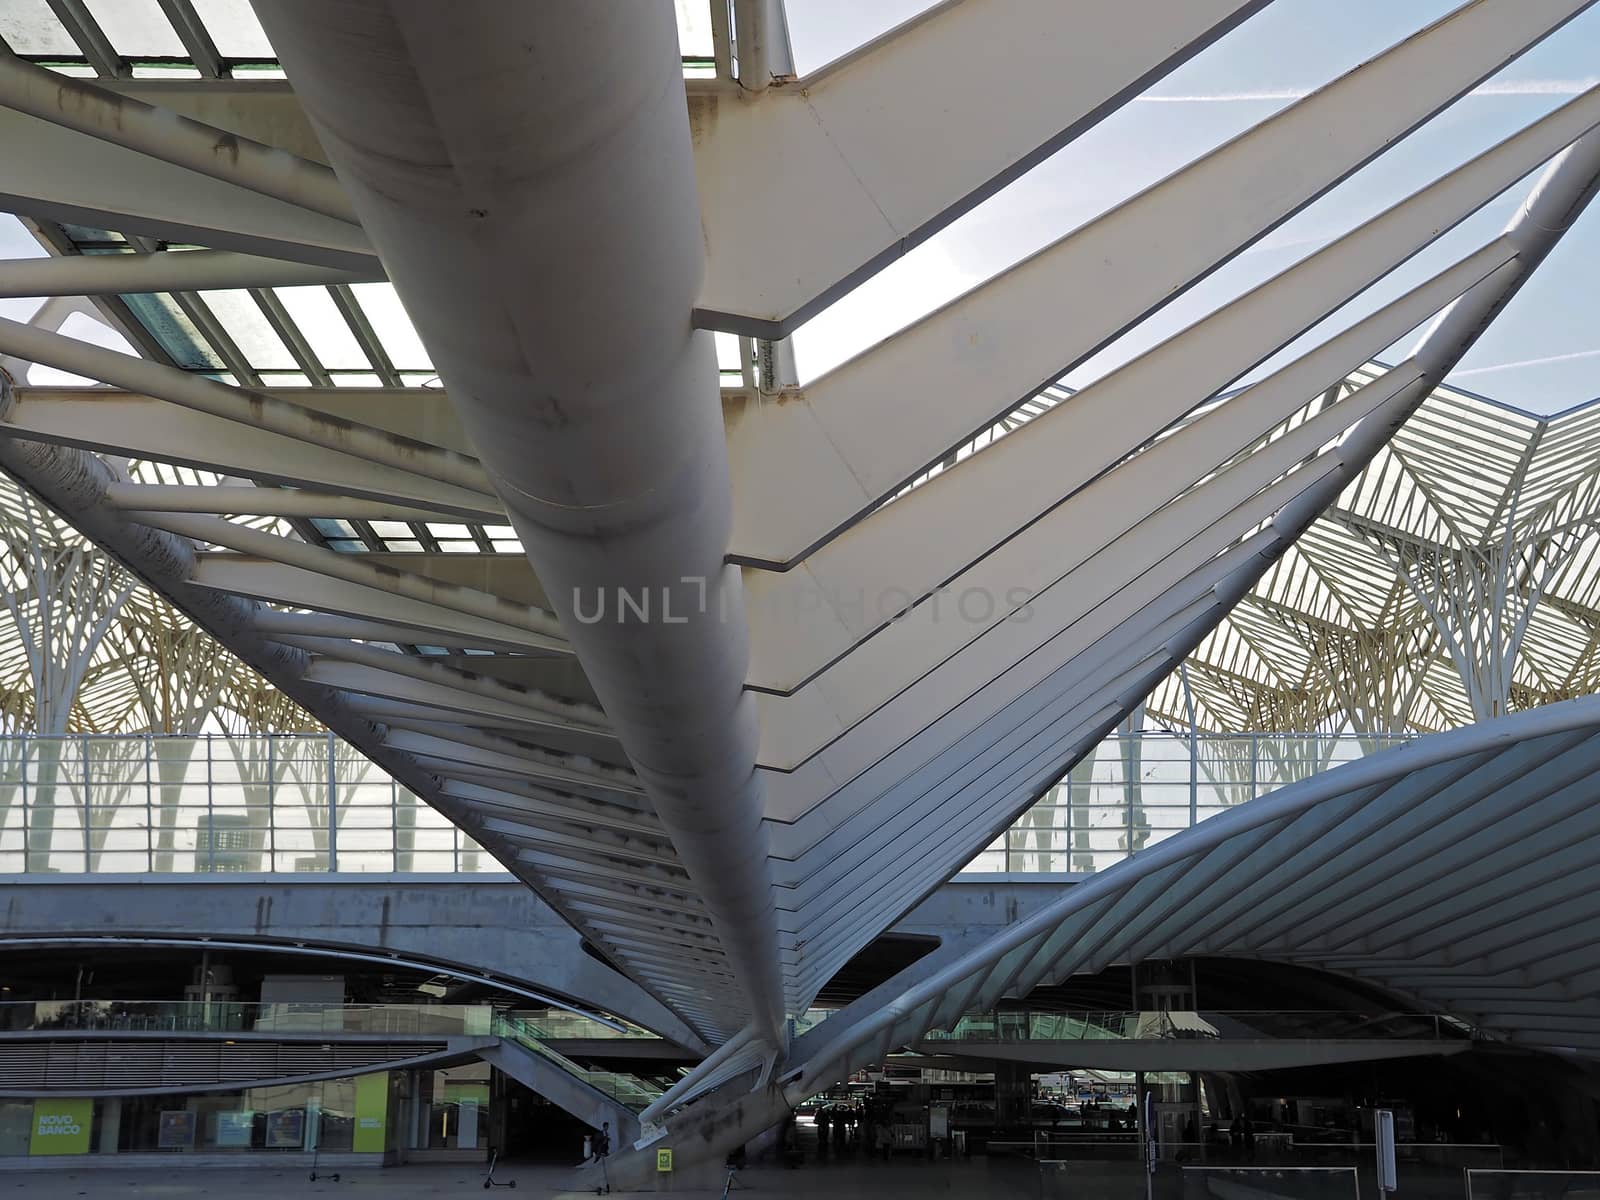 Intersting architecture of the railway station Oriente in Lisbon in Portugal by Stimmungsbilder